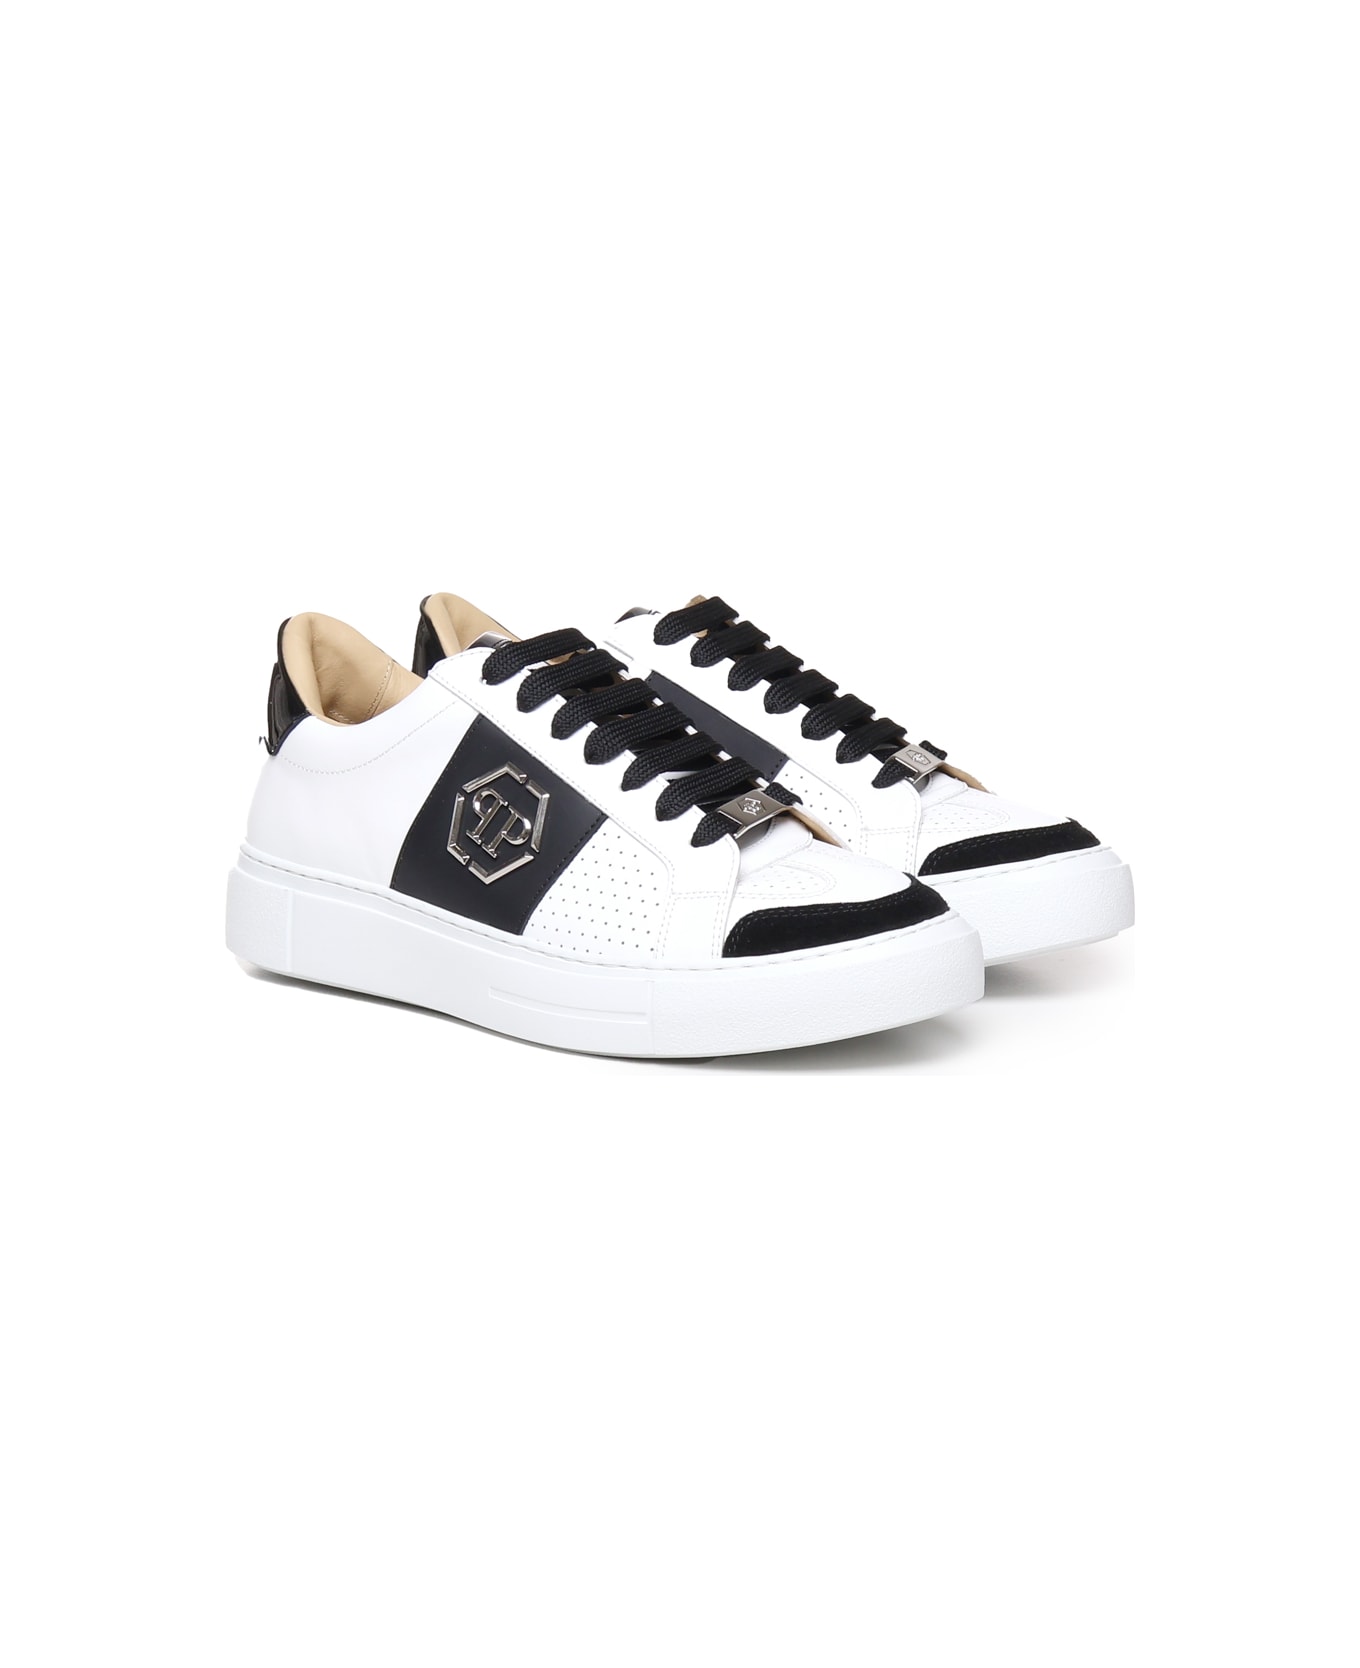 Philipp Plein Sneakers Pp In Calfskin - White / black スニーカー